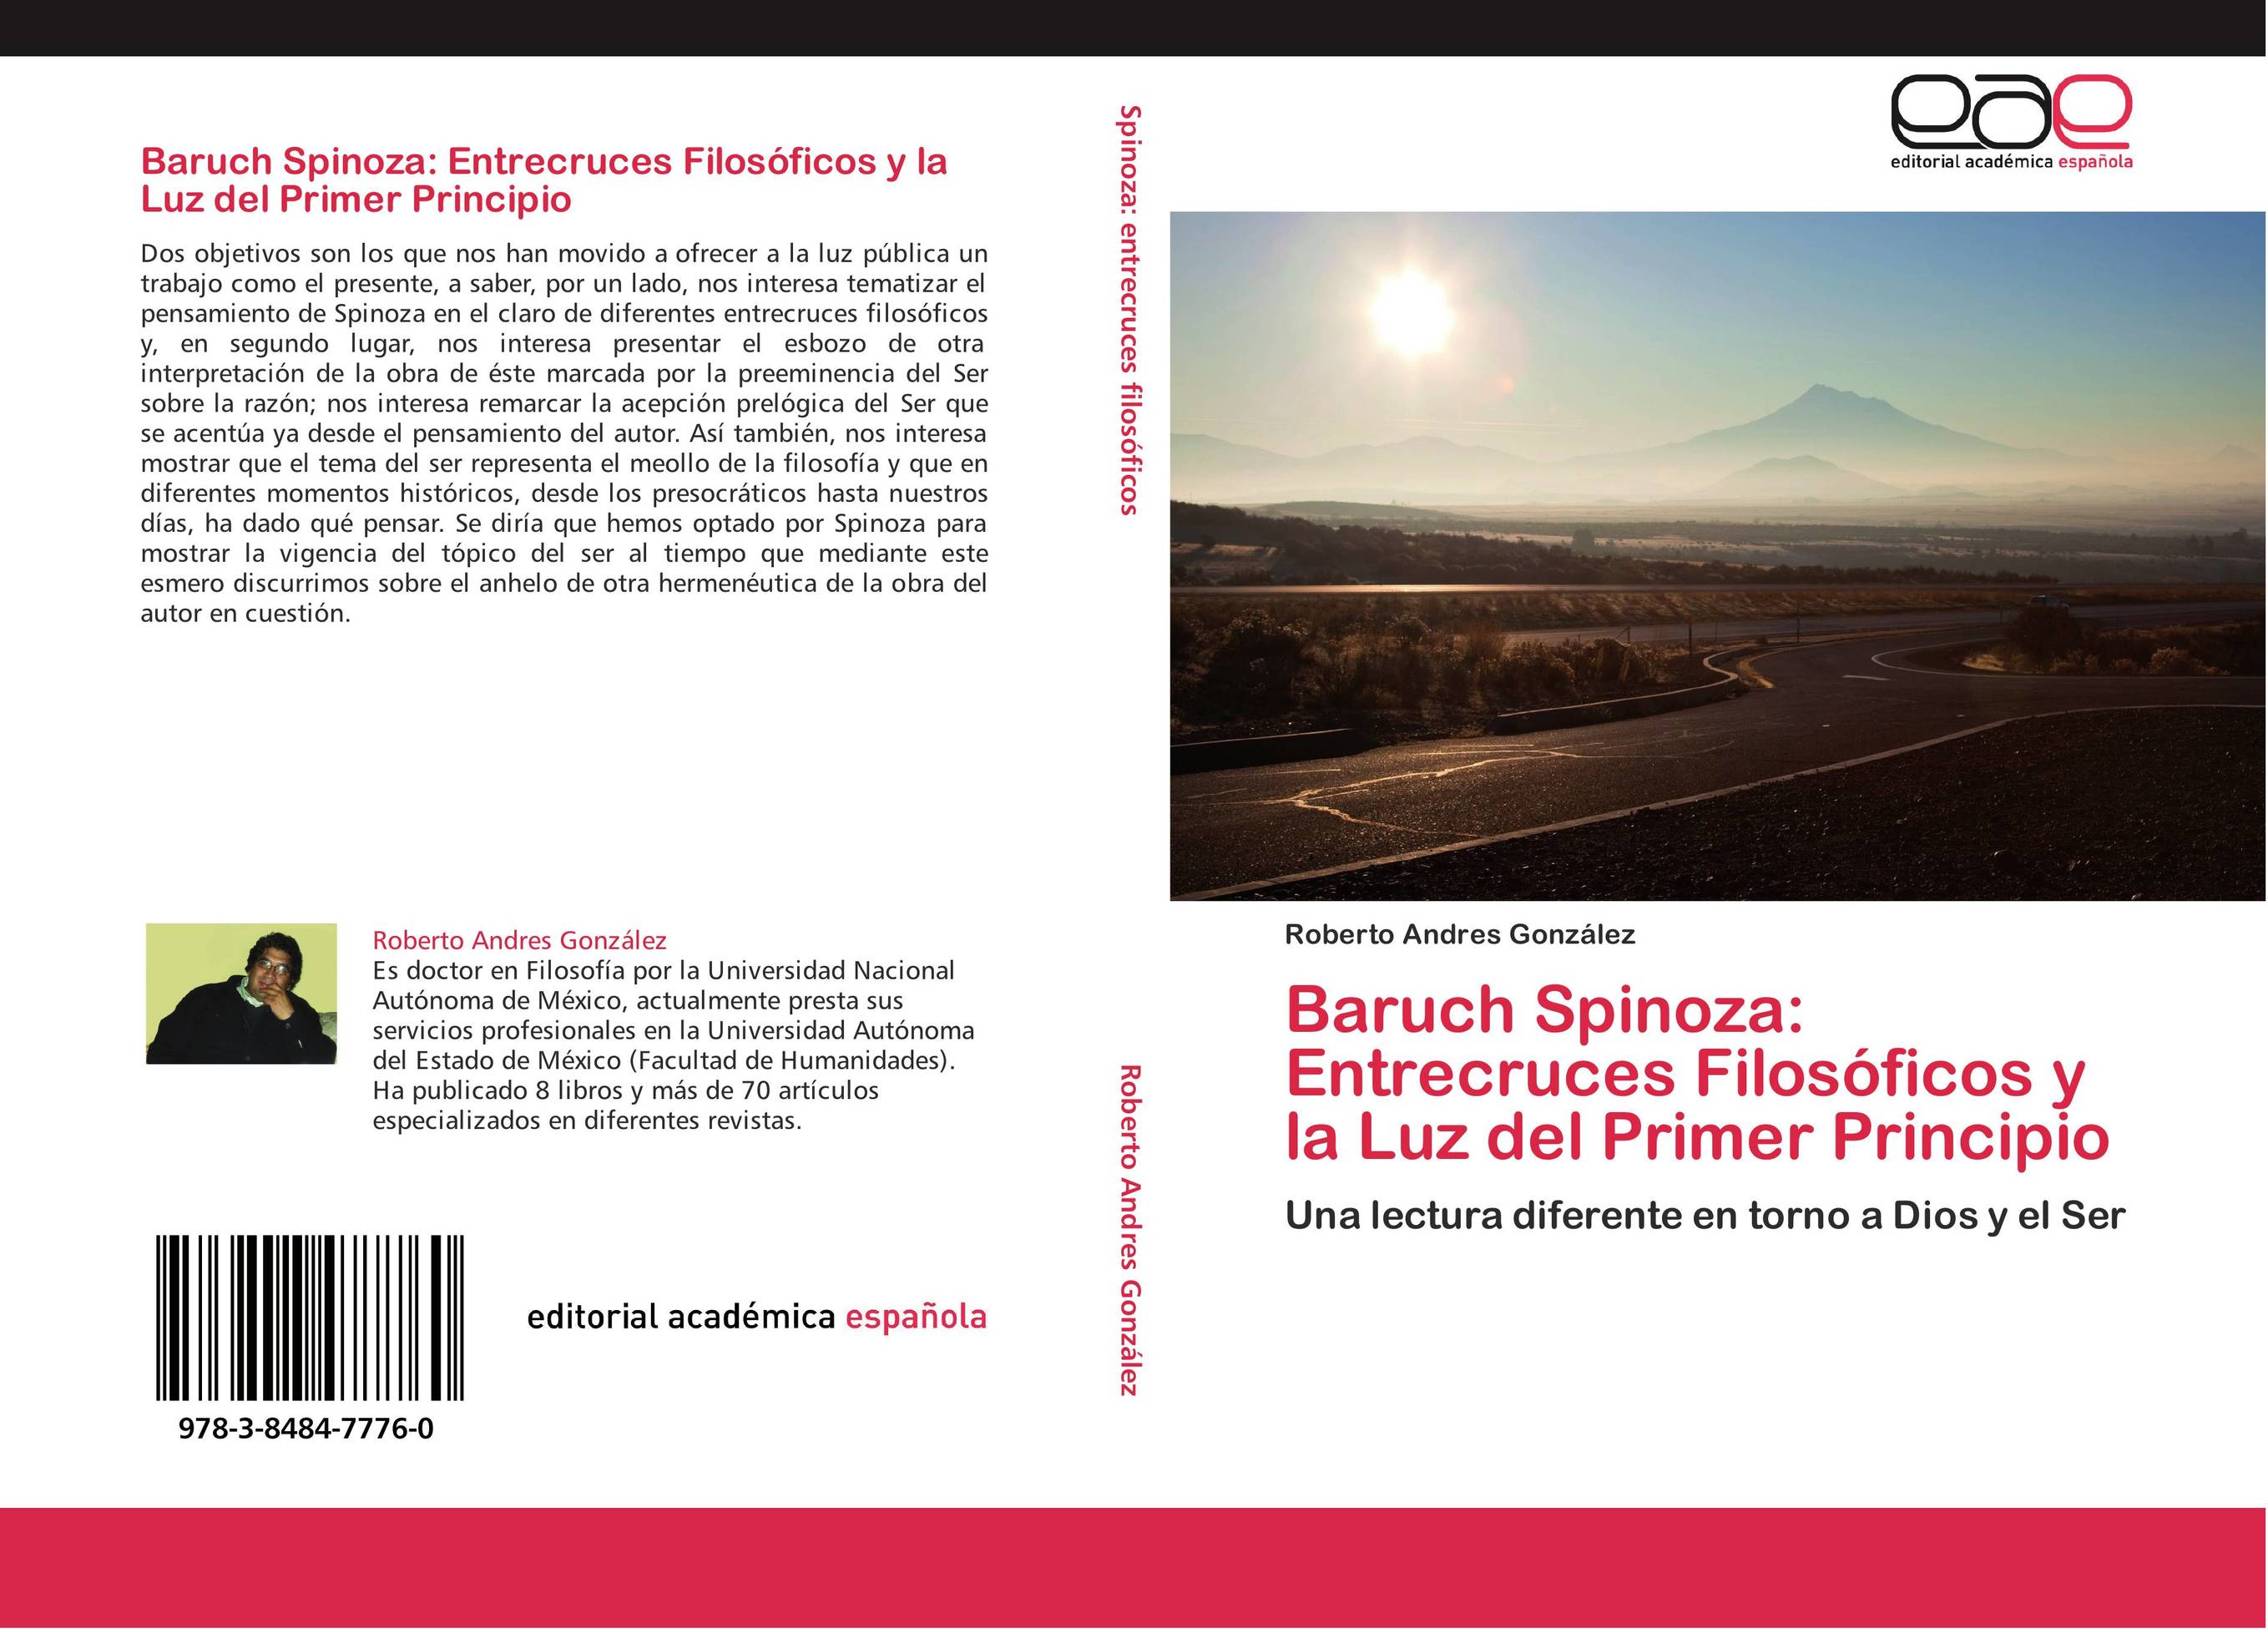 Baruch Spinoza: Entrecruces Filosóficos y la Luz del Primer Principio